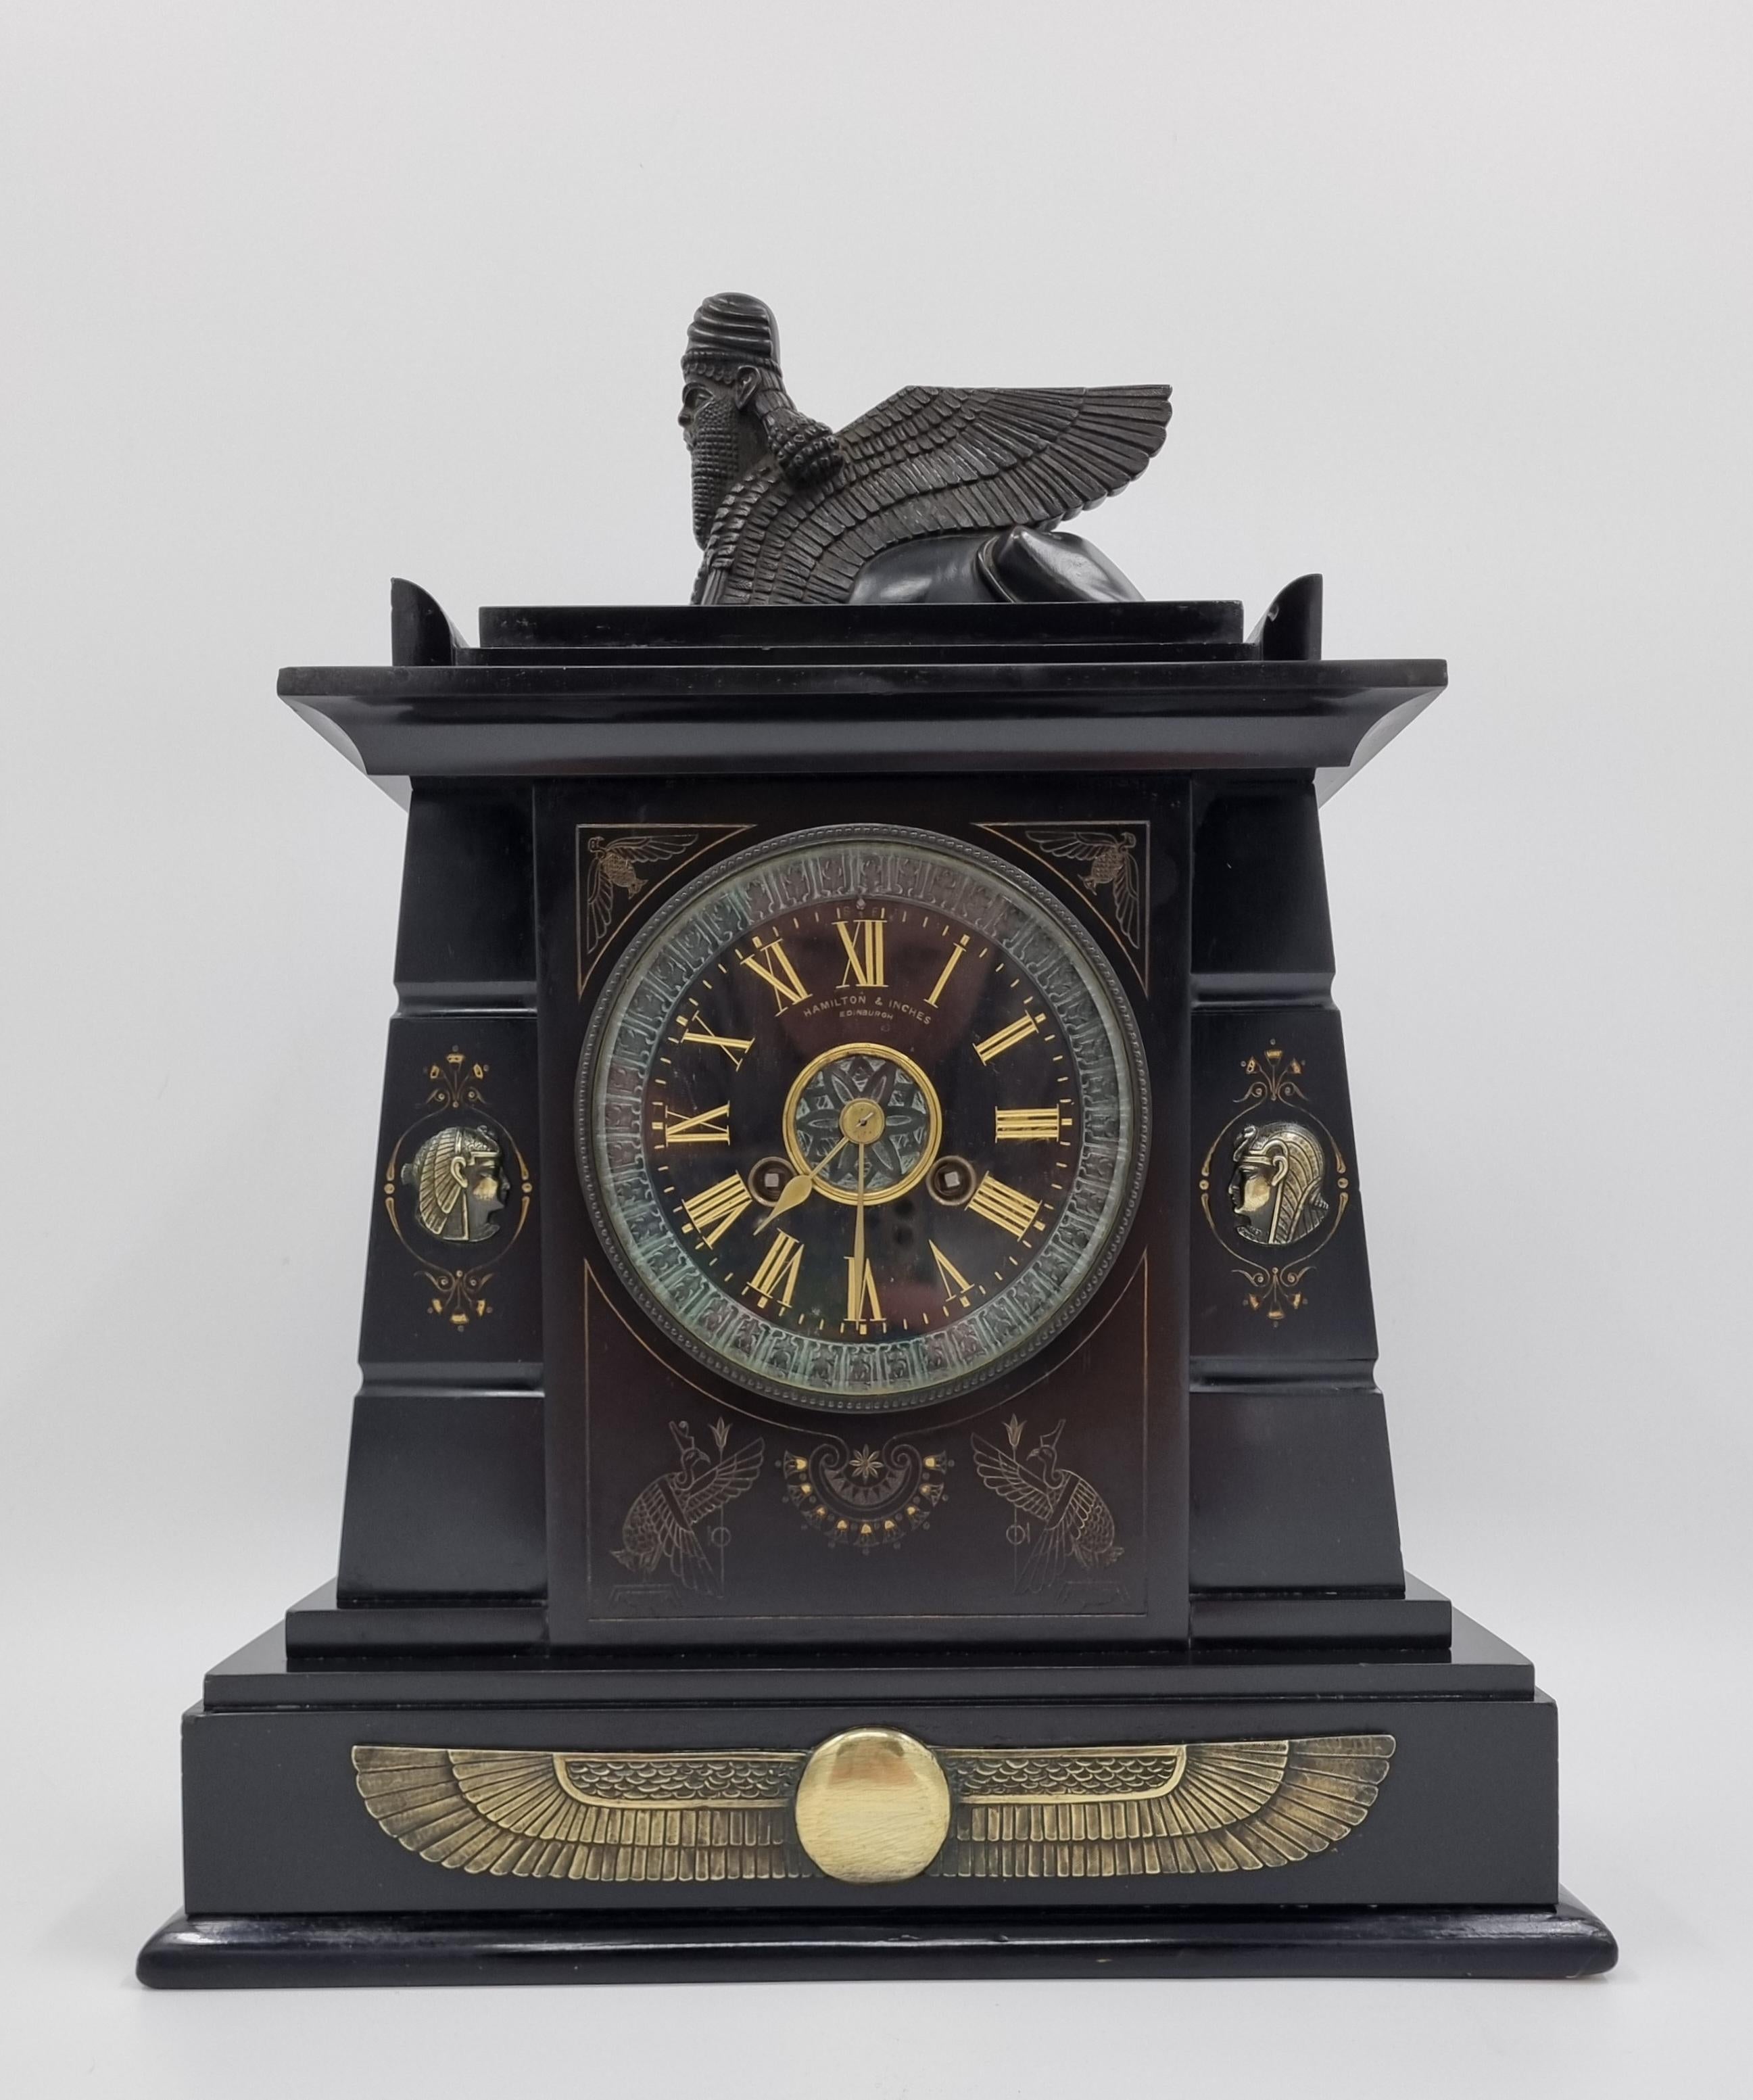 Horloge en marbre noir de style néo-égyptien

Vers les années 1860, fabriquée par les célèbres horlogers et bijoutiers Hamilton and Inches d'Édimbourg, avec un mandat royal accordé par la reine Victoria en 1893. 

Dotée d'un superbe boîtier en